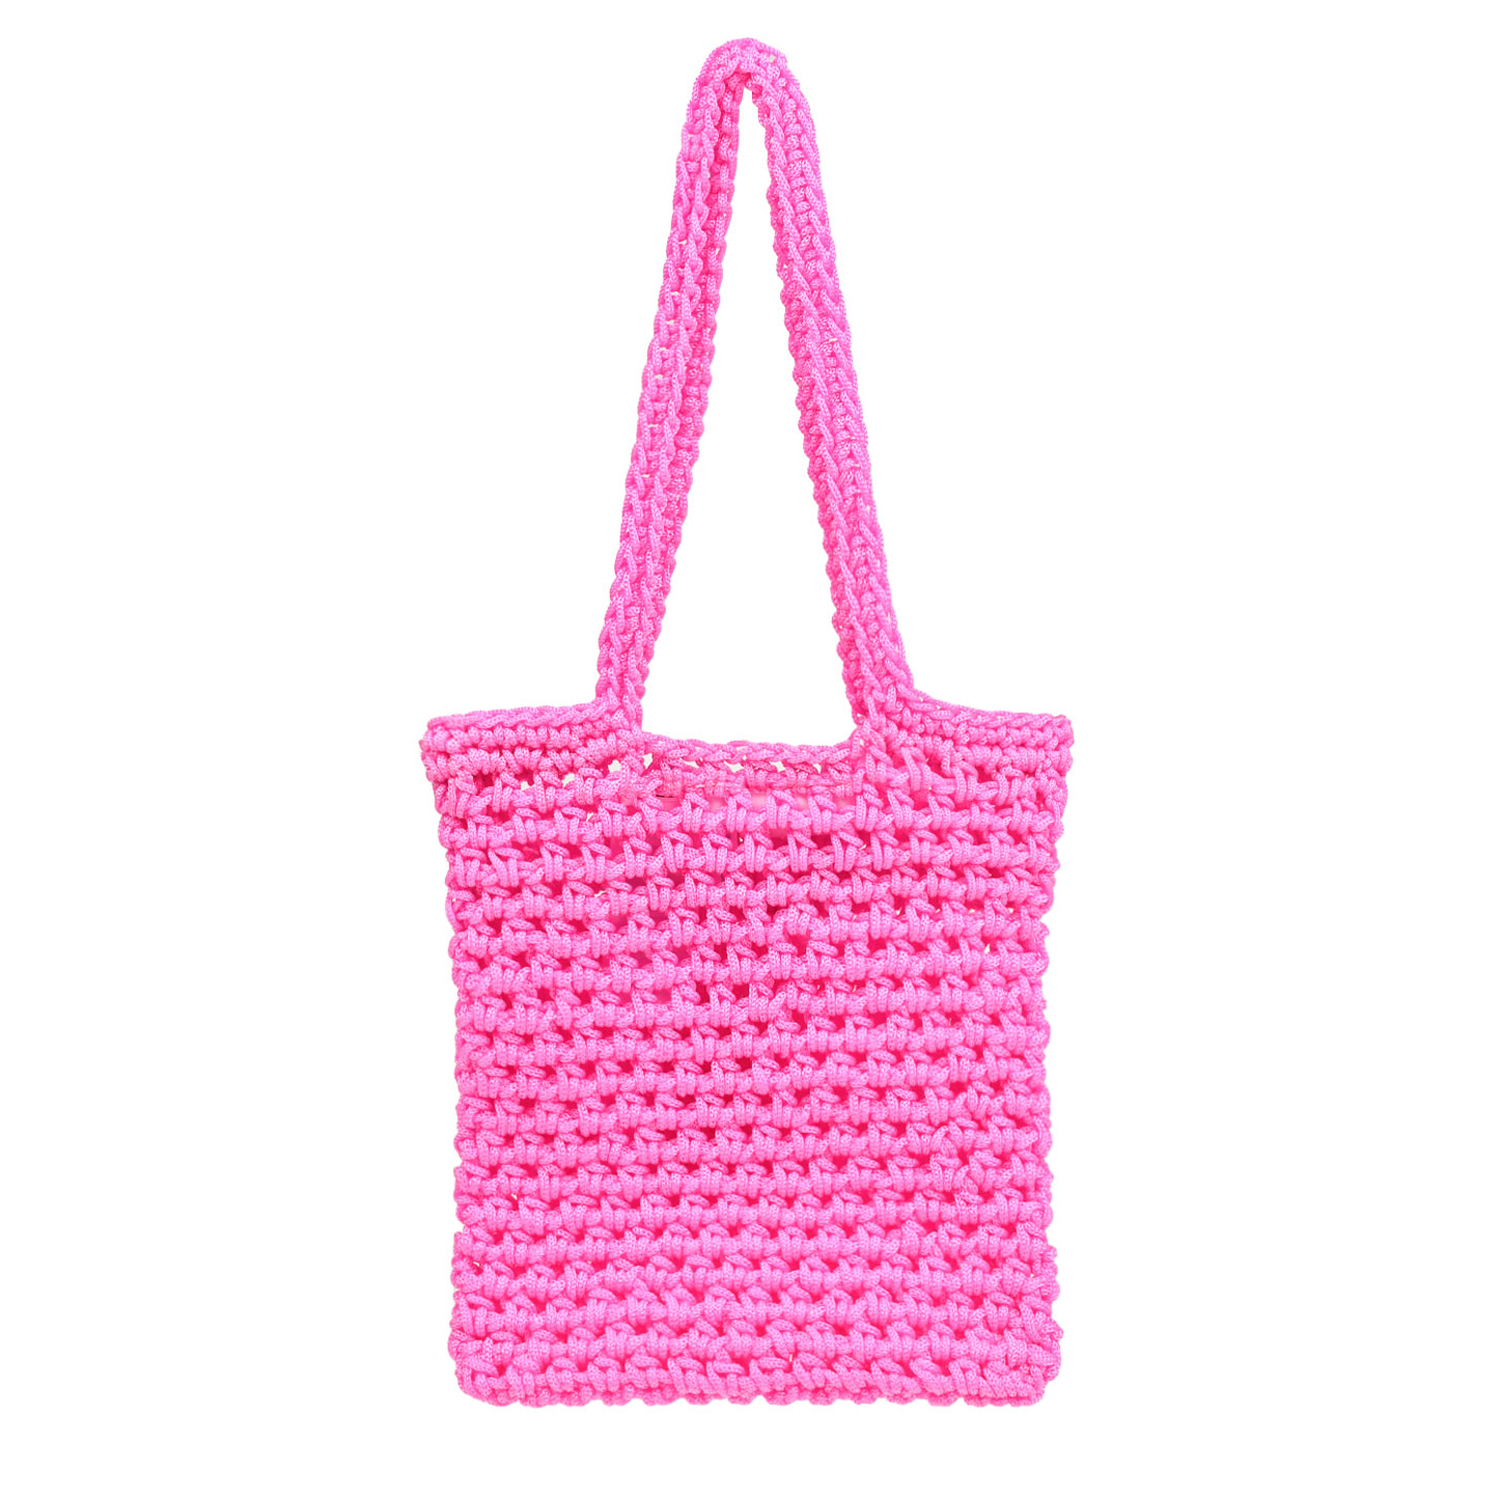 Сумка Crochet Bag Confetti Molo, размер unica, цвет нет цвета